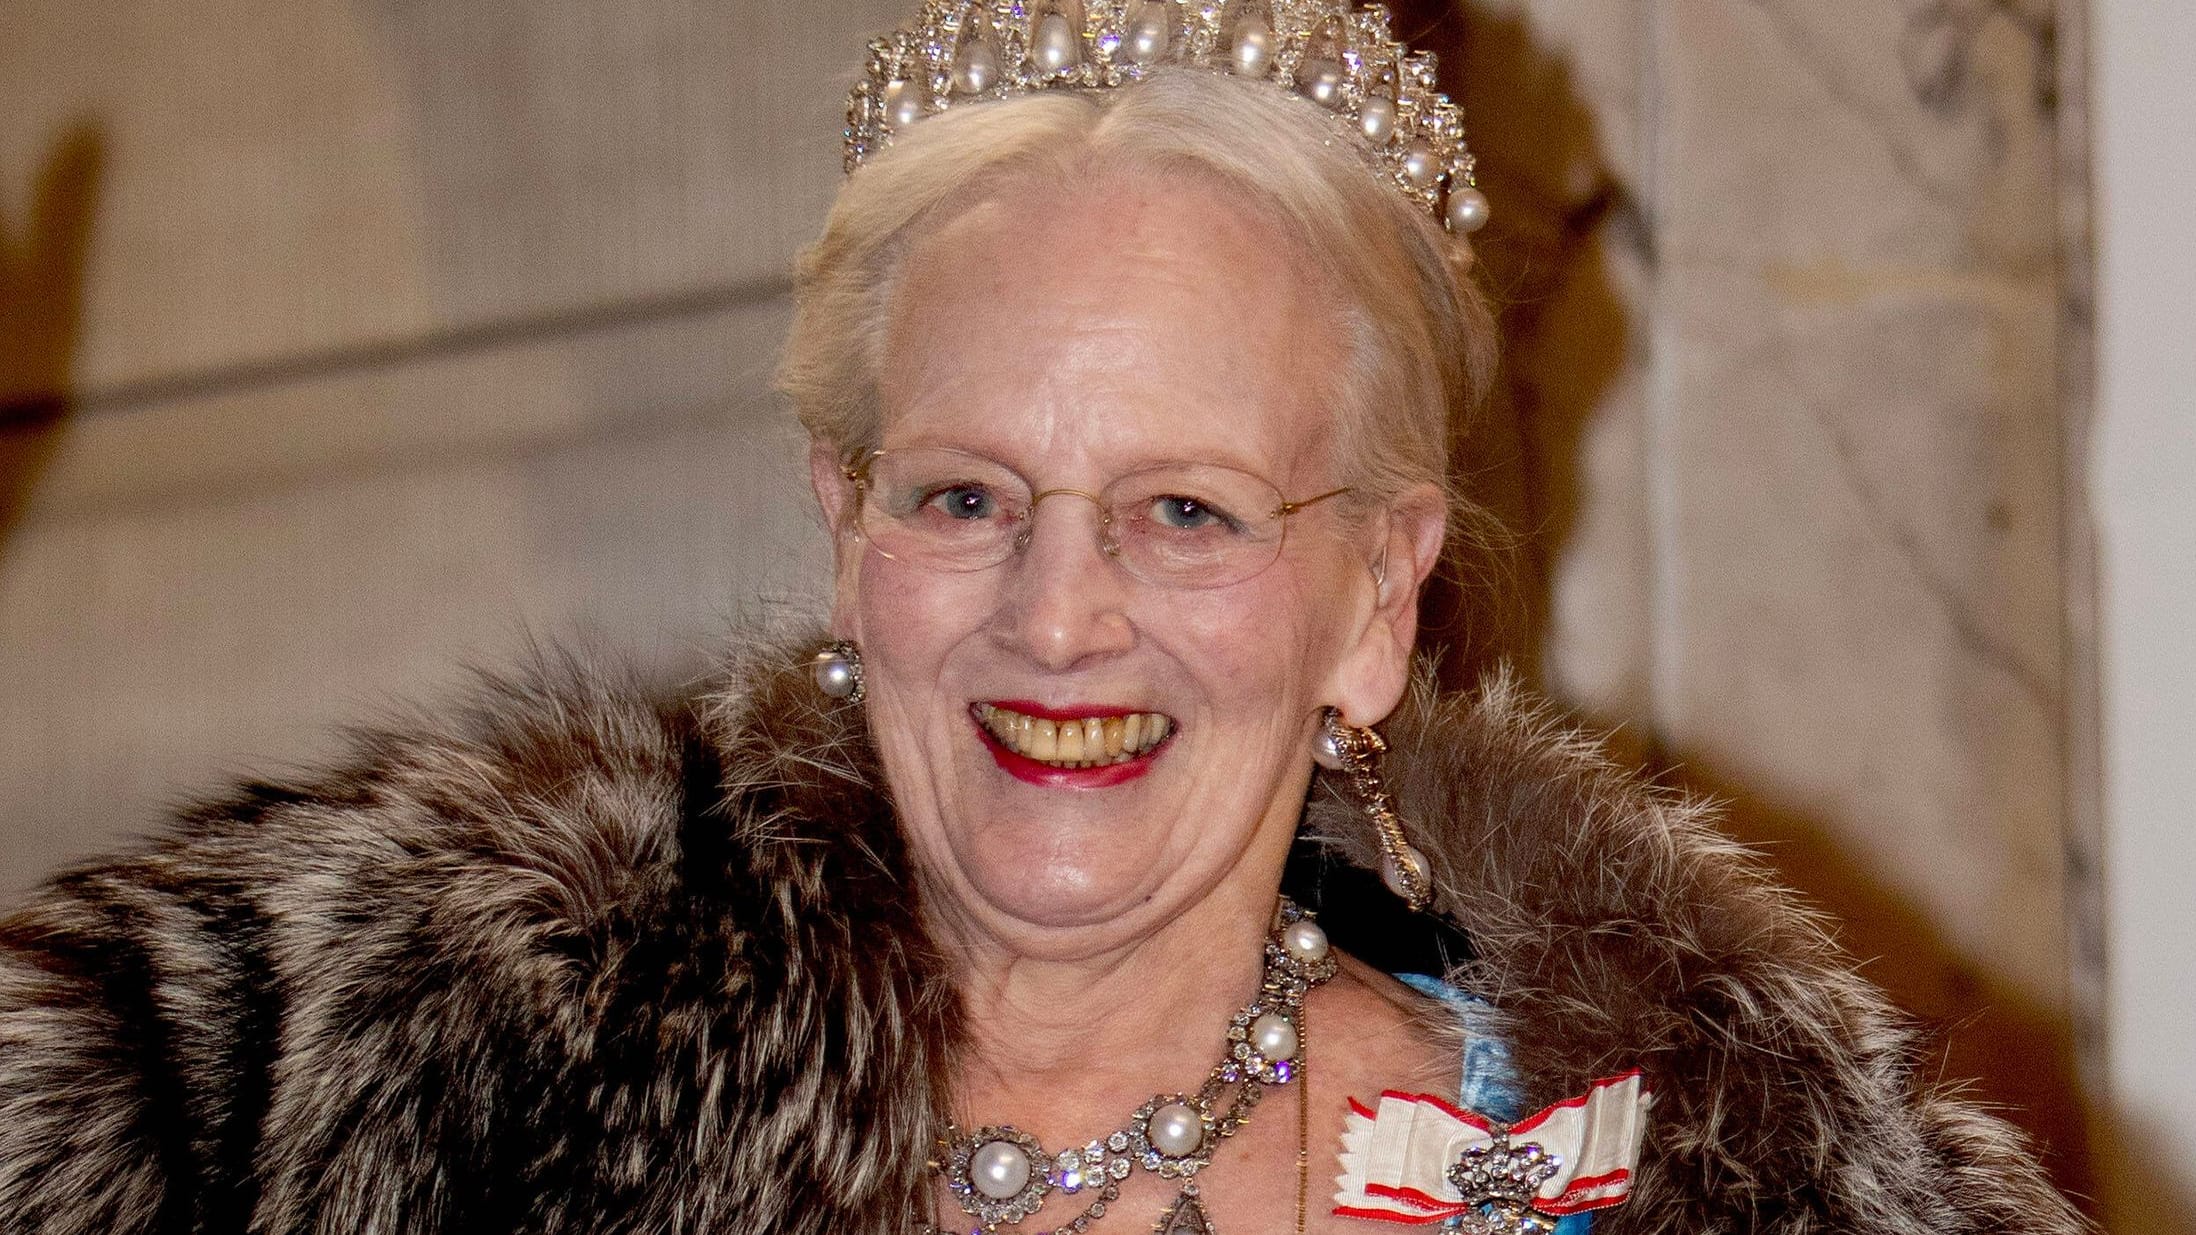 Dänische Königin Margrethe II. für Outfit beim Silvesterbankett kritisiert